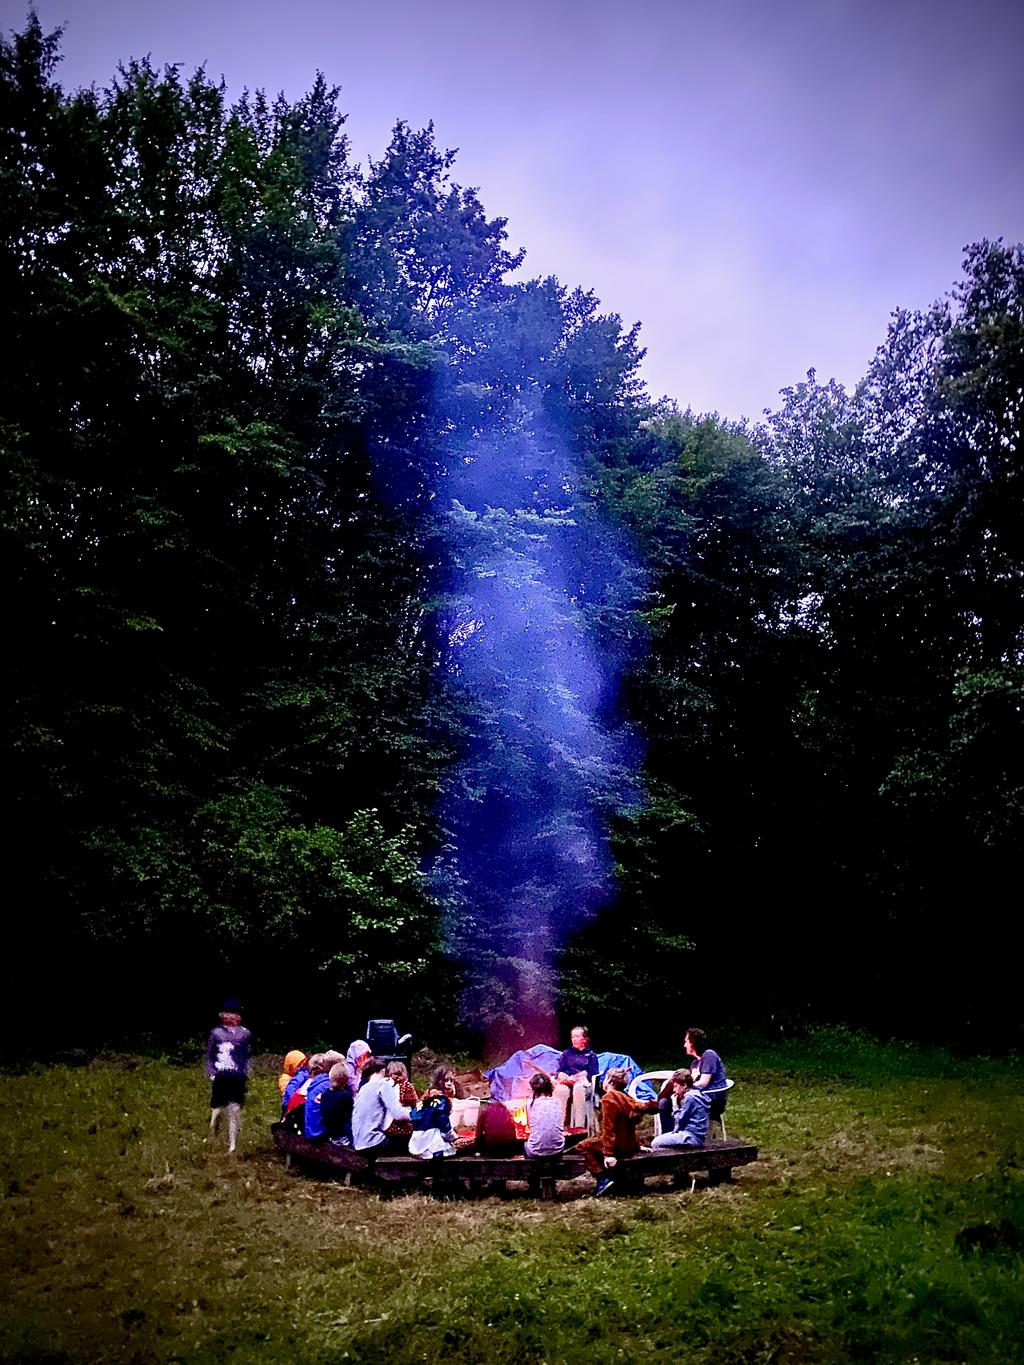 Een groep leiding en snuisters zitten knus rond een kampvuur waarvan de rook zichtbaar is tegen een achtergrond van bomen.